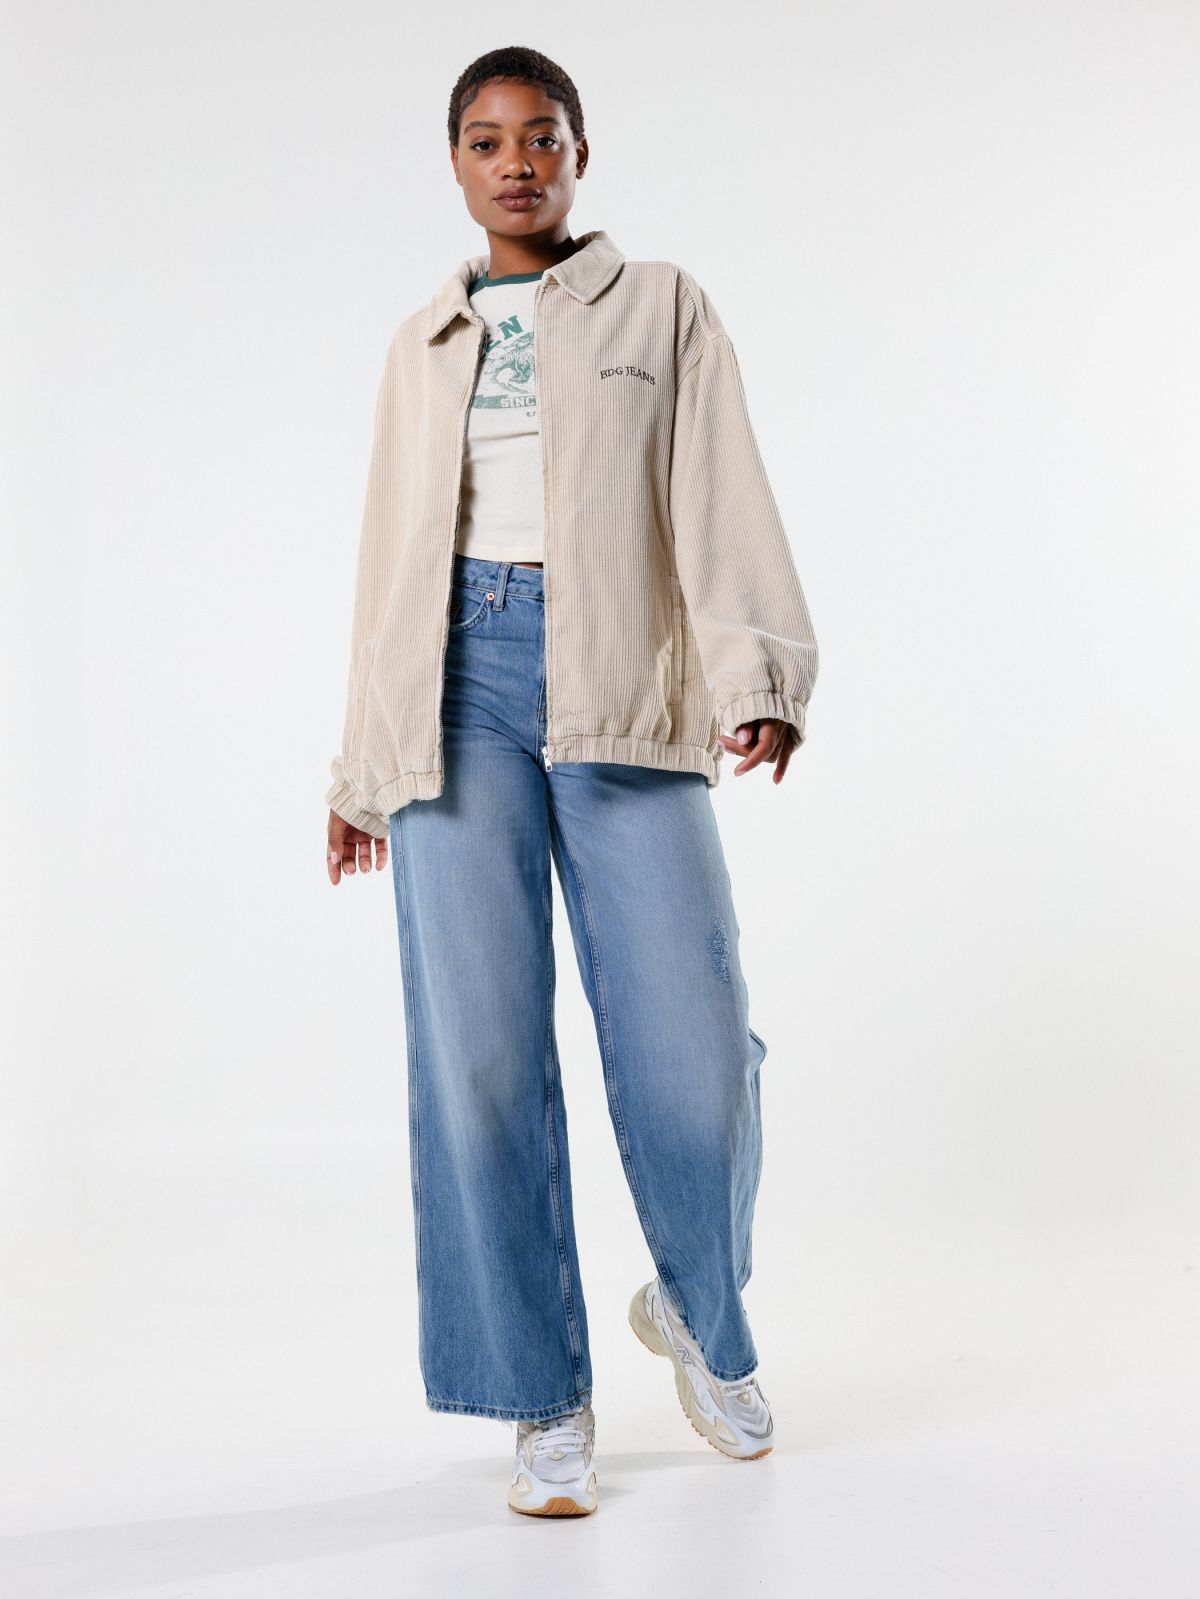  ג'ינס בגזרה מתרחבת של URBAN OUTFITTERS